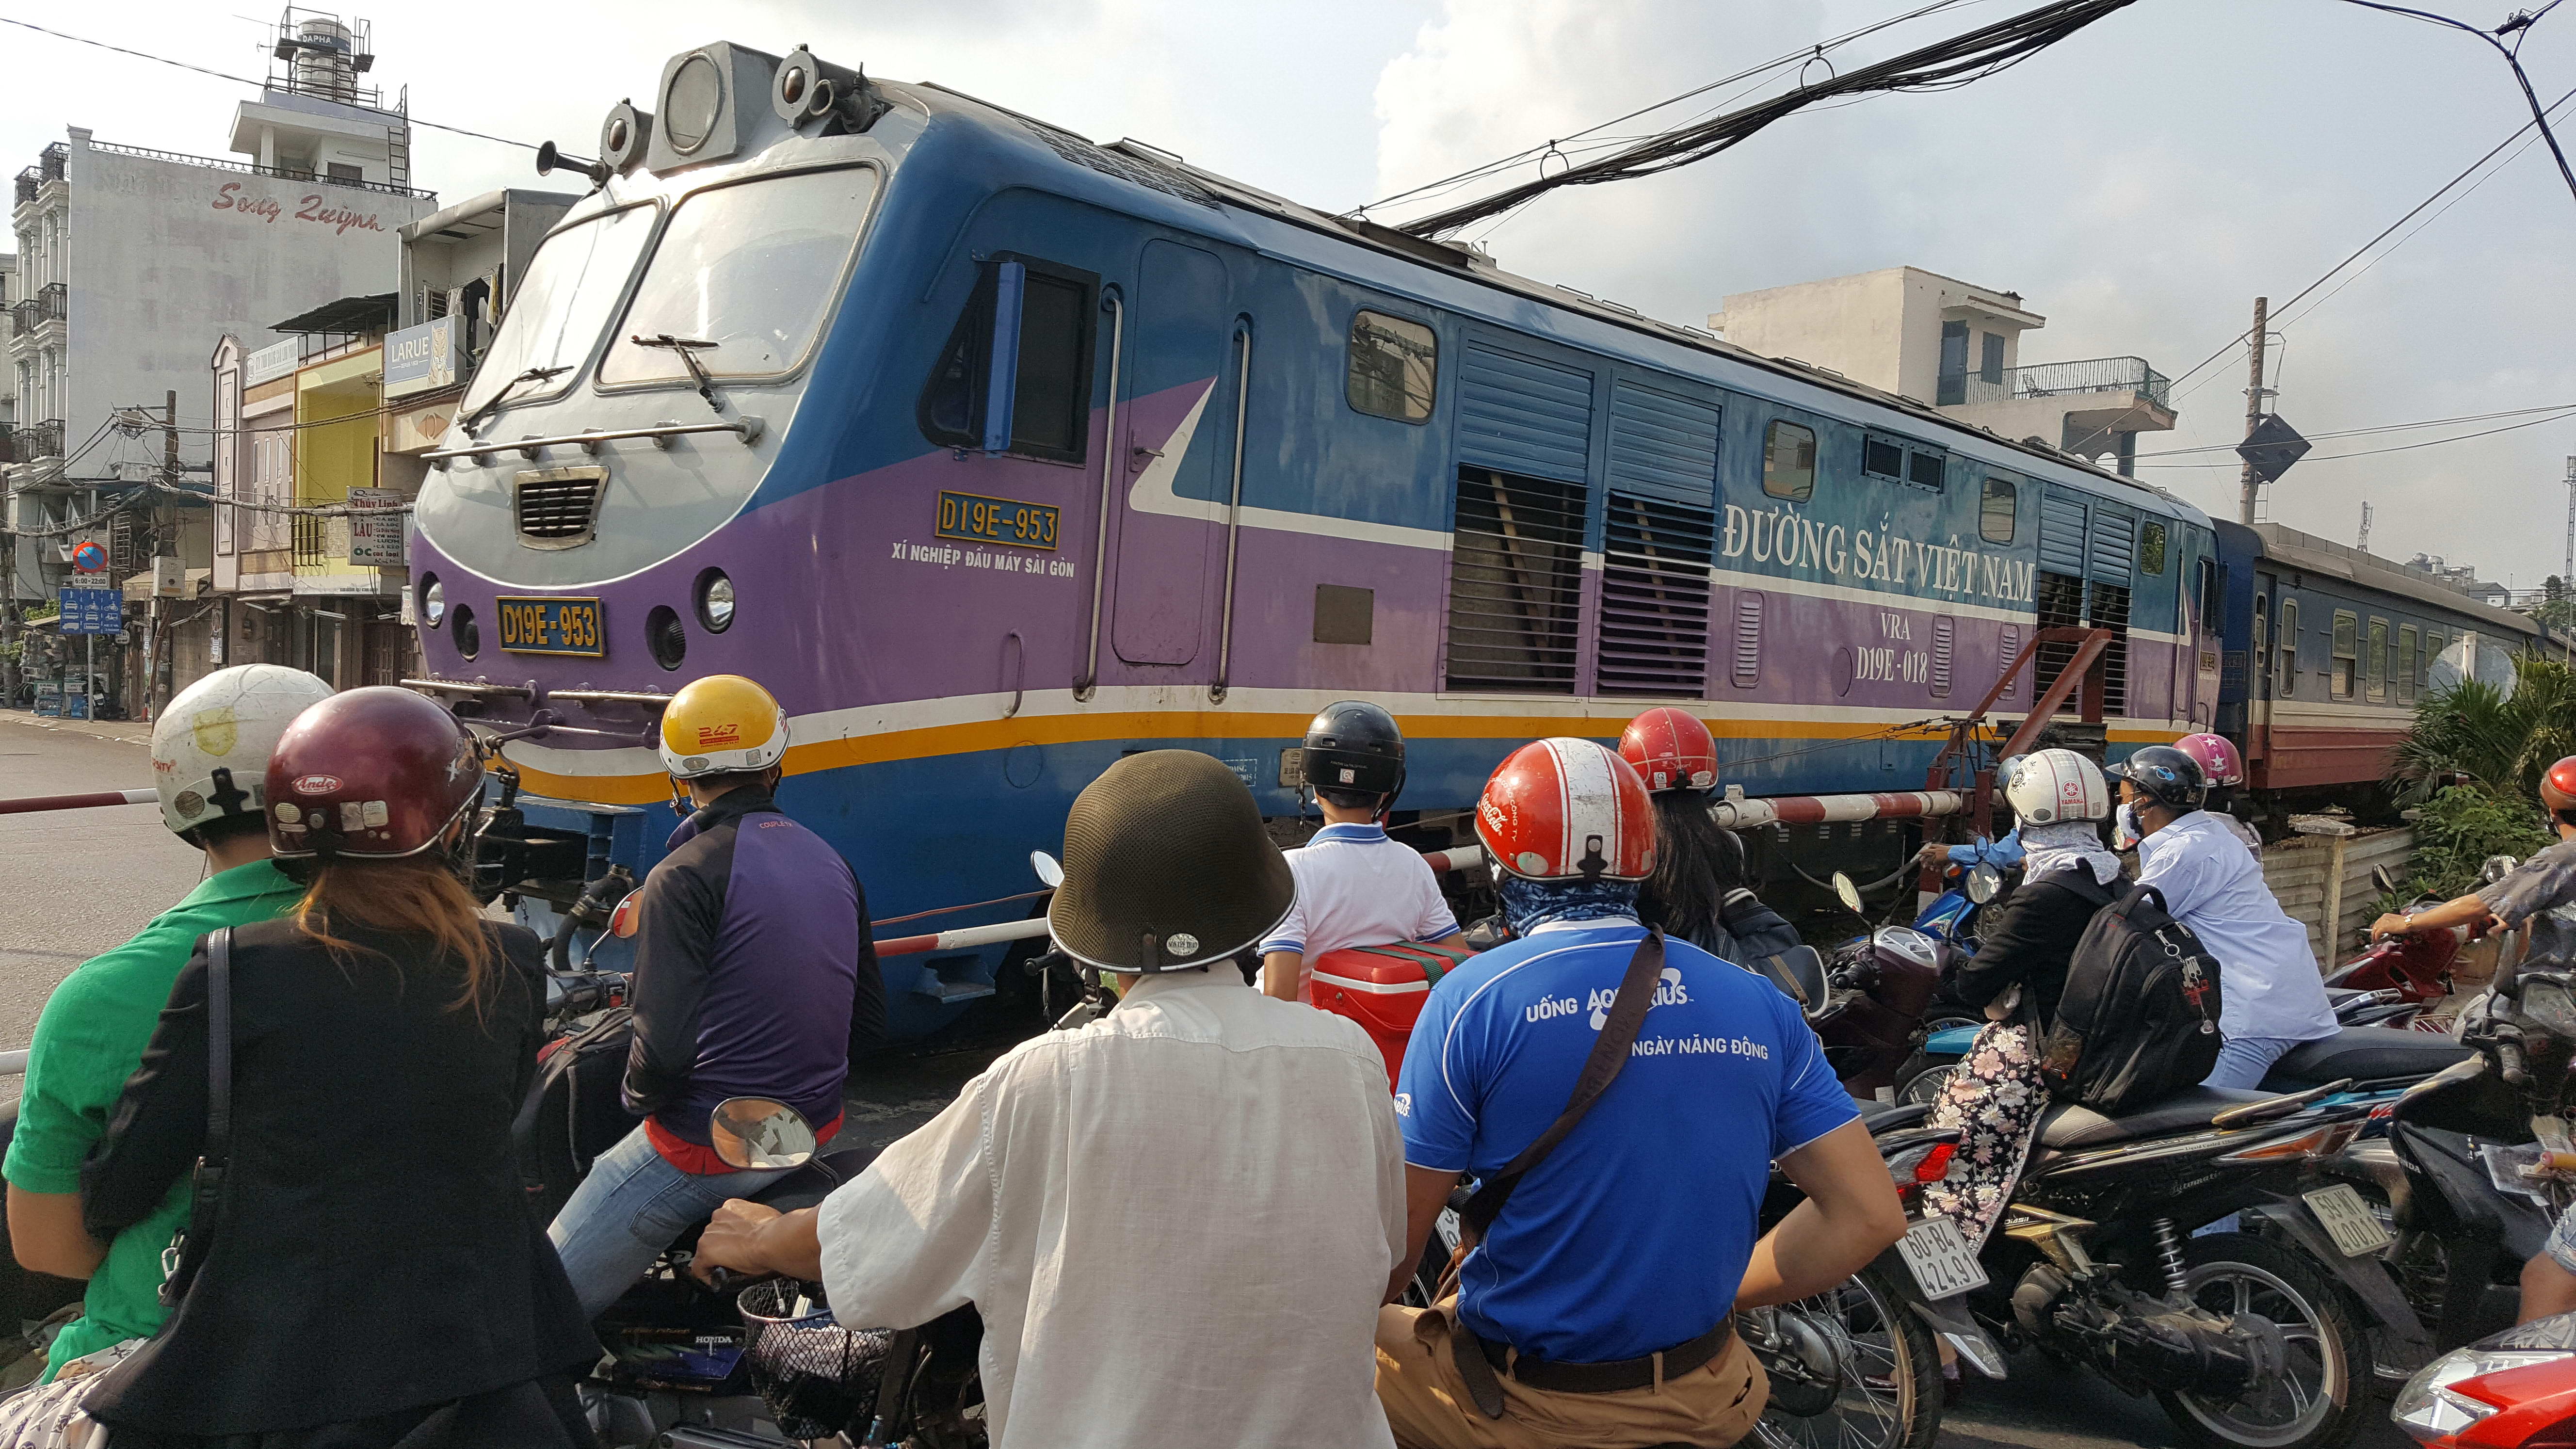 Tàu lửa từ ga Sài Gòn không có khách vẫn chạy đoạn bờ kè quận 3 - Ảnh: Độc Lập 